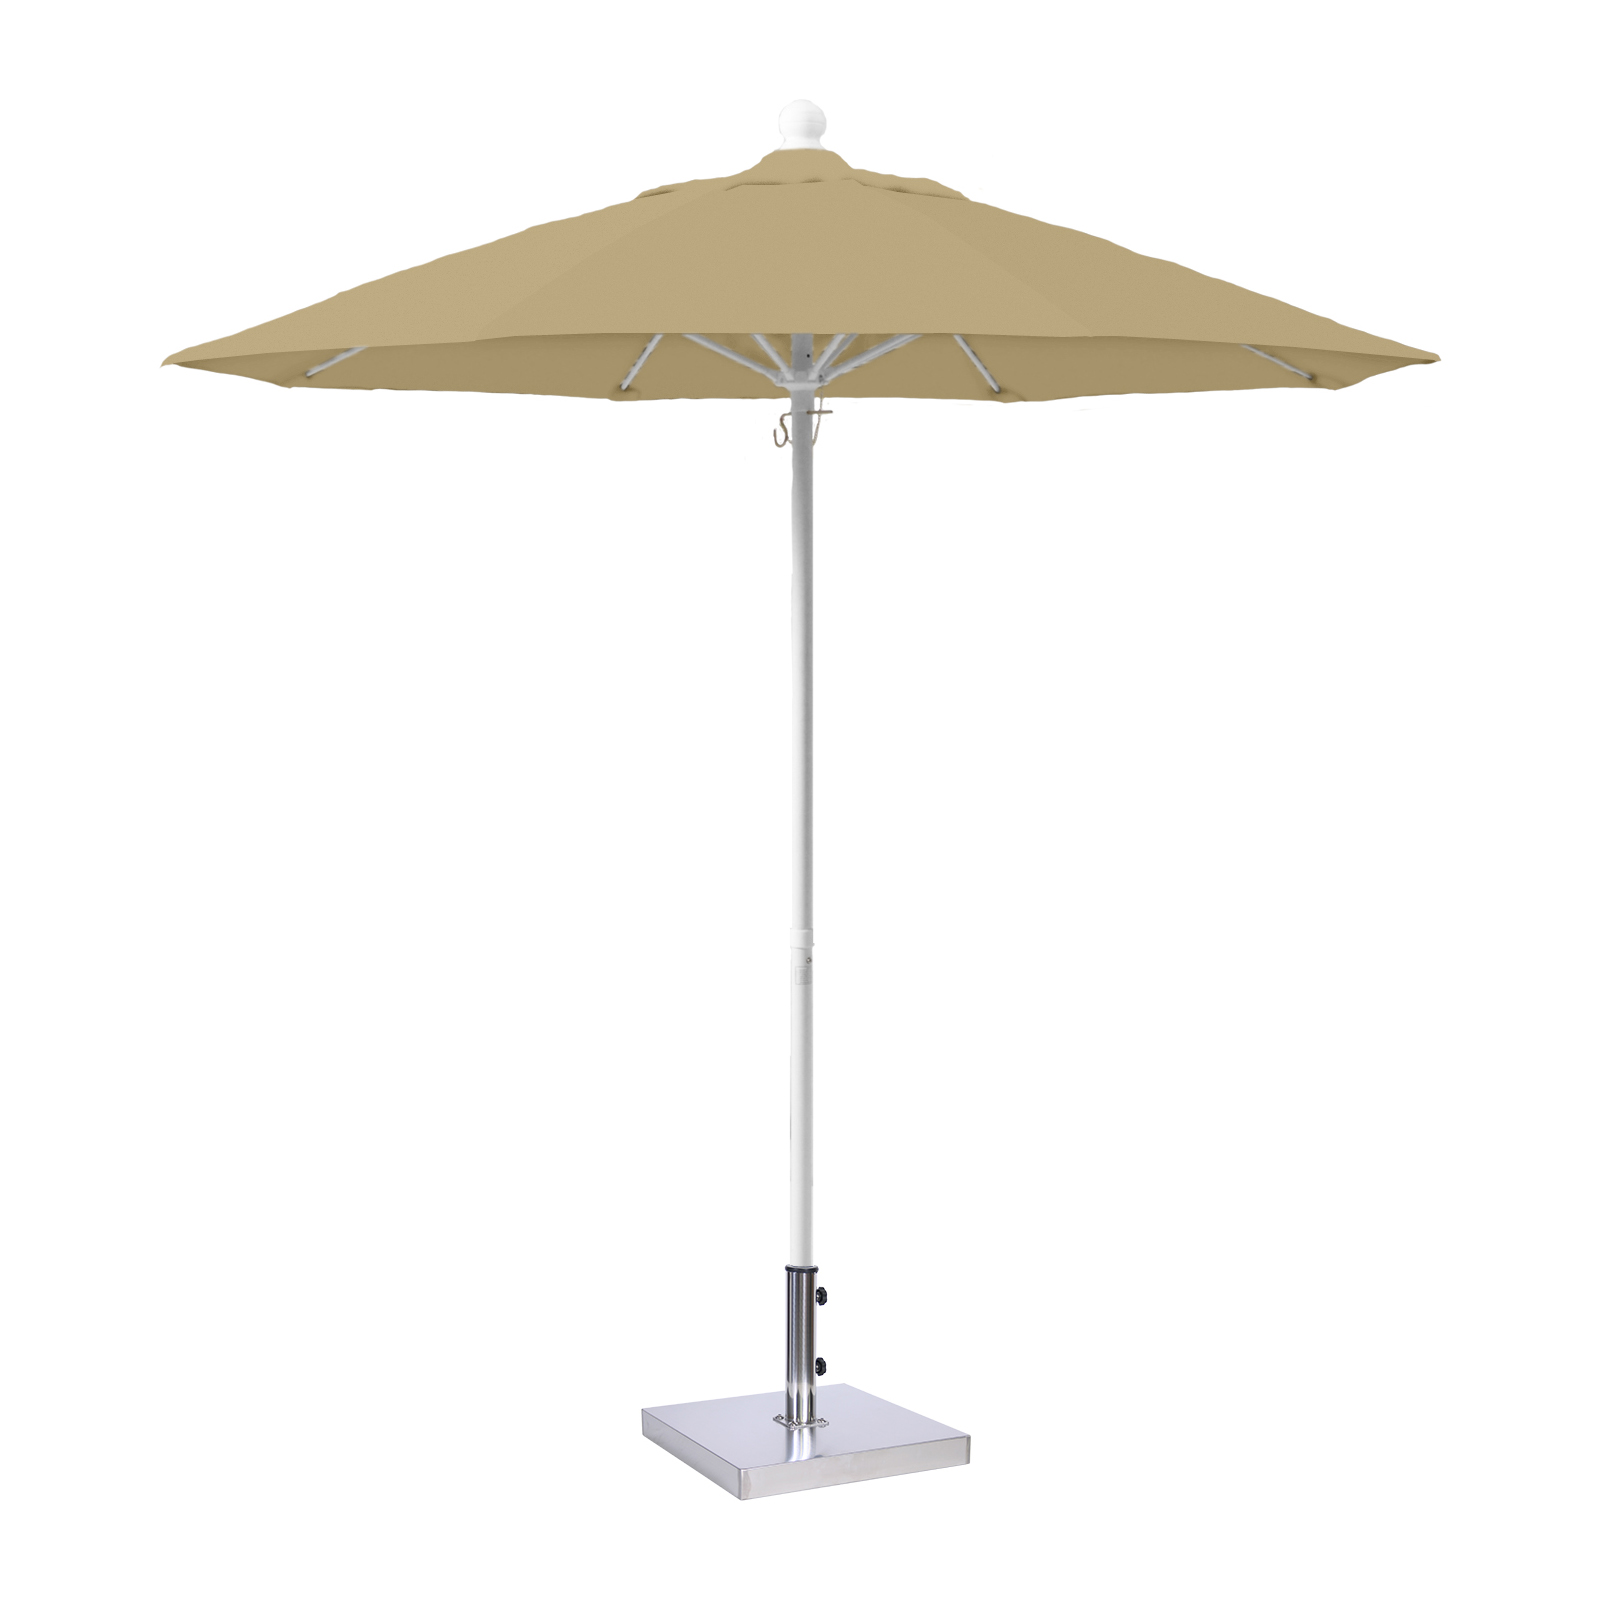 MiYu Furniture  7.5 ft Fiberglass Market Umbrella - White Frame